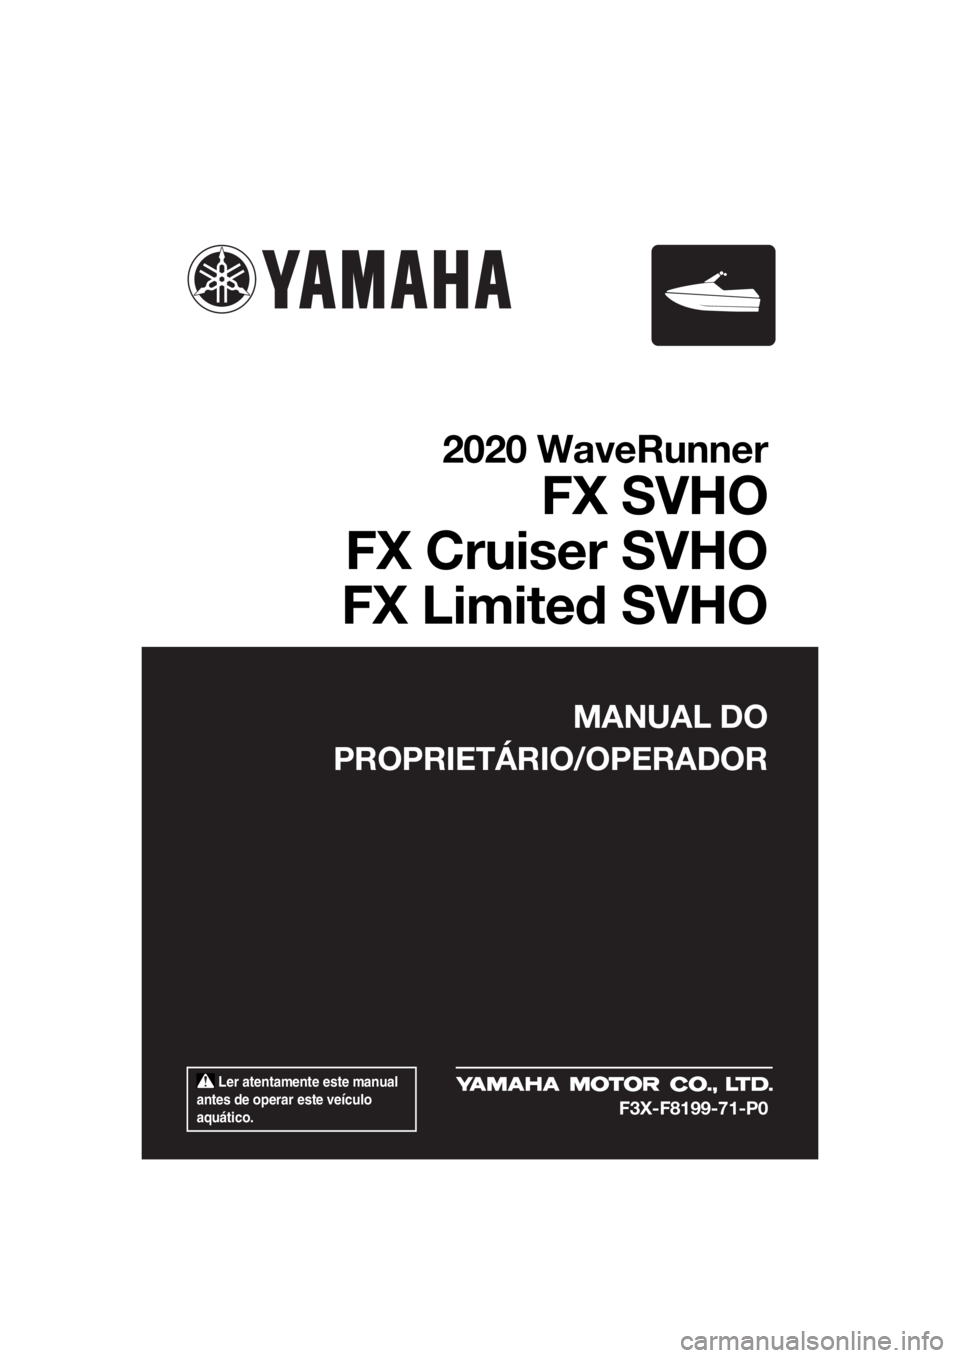 YAMAHA FX SVHO 2020  Manual de utilização (in Portuguese)  Ler atentamente este manual 
antes de operar este veículo 
aquático.
MANUAL DO
PROPRIETÁRIO/OPERADOR
2020 WaveRunner
FX SVHO
FX Cruiser SVHO
FX Limited SVHO
F3X-F8199-71-P0
UF3X71P0.book  Page 1  